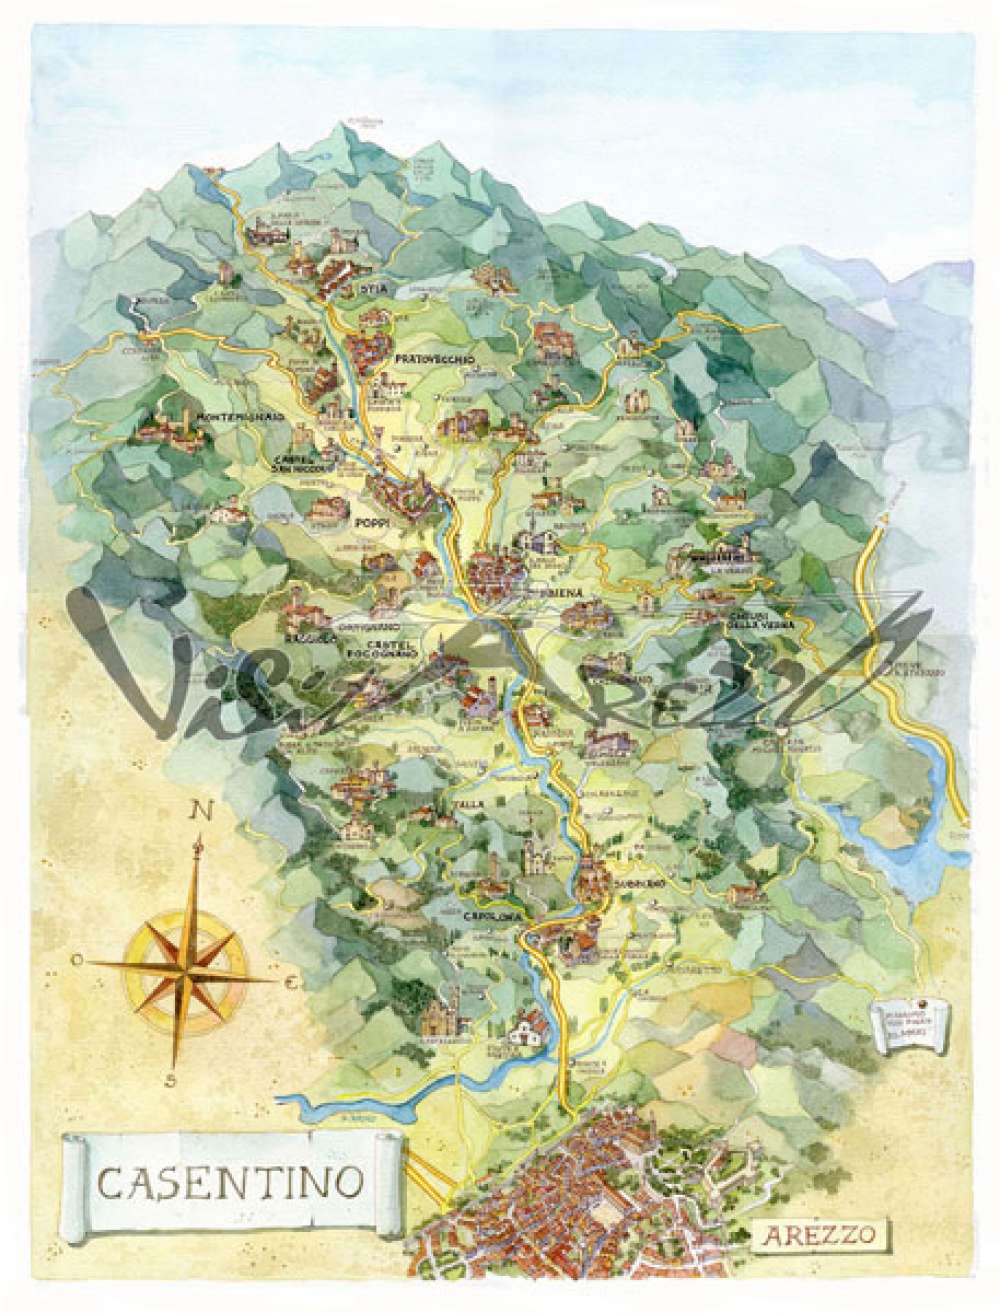 Cartina e mappa turistica del Casentino, itinerario cose da vedere